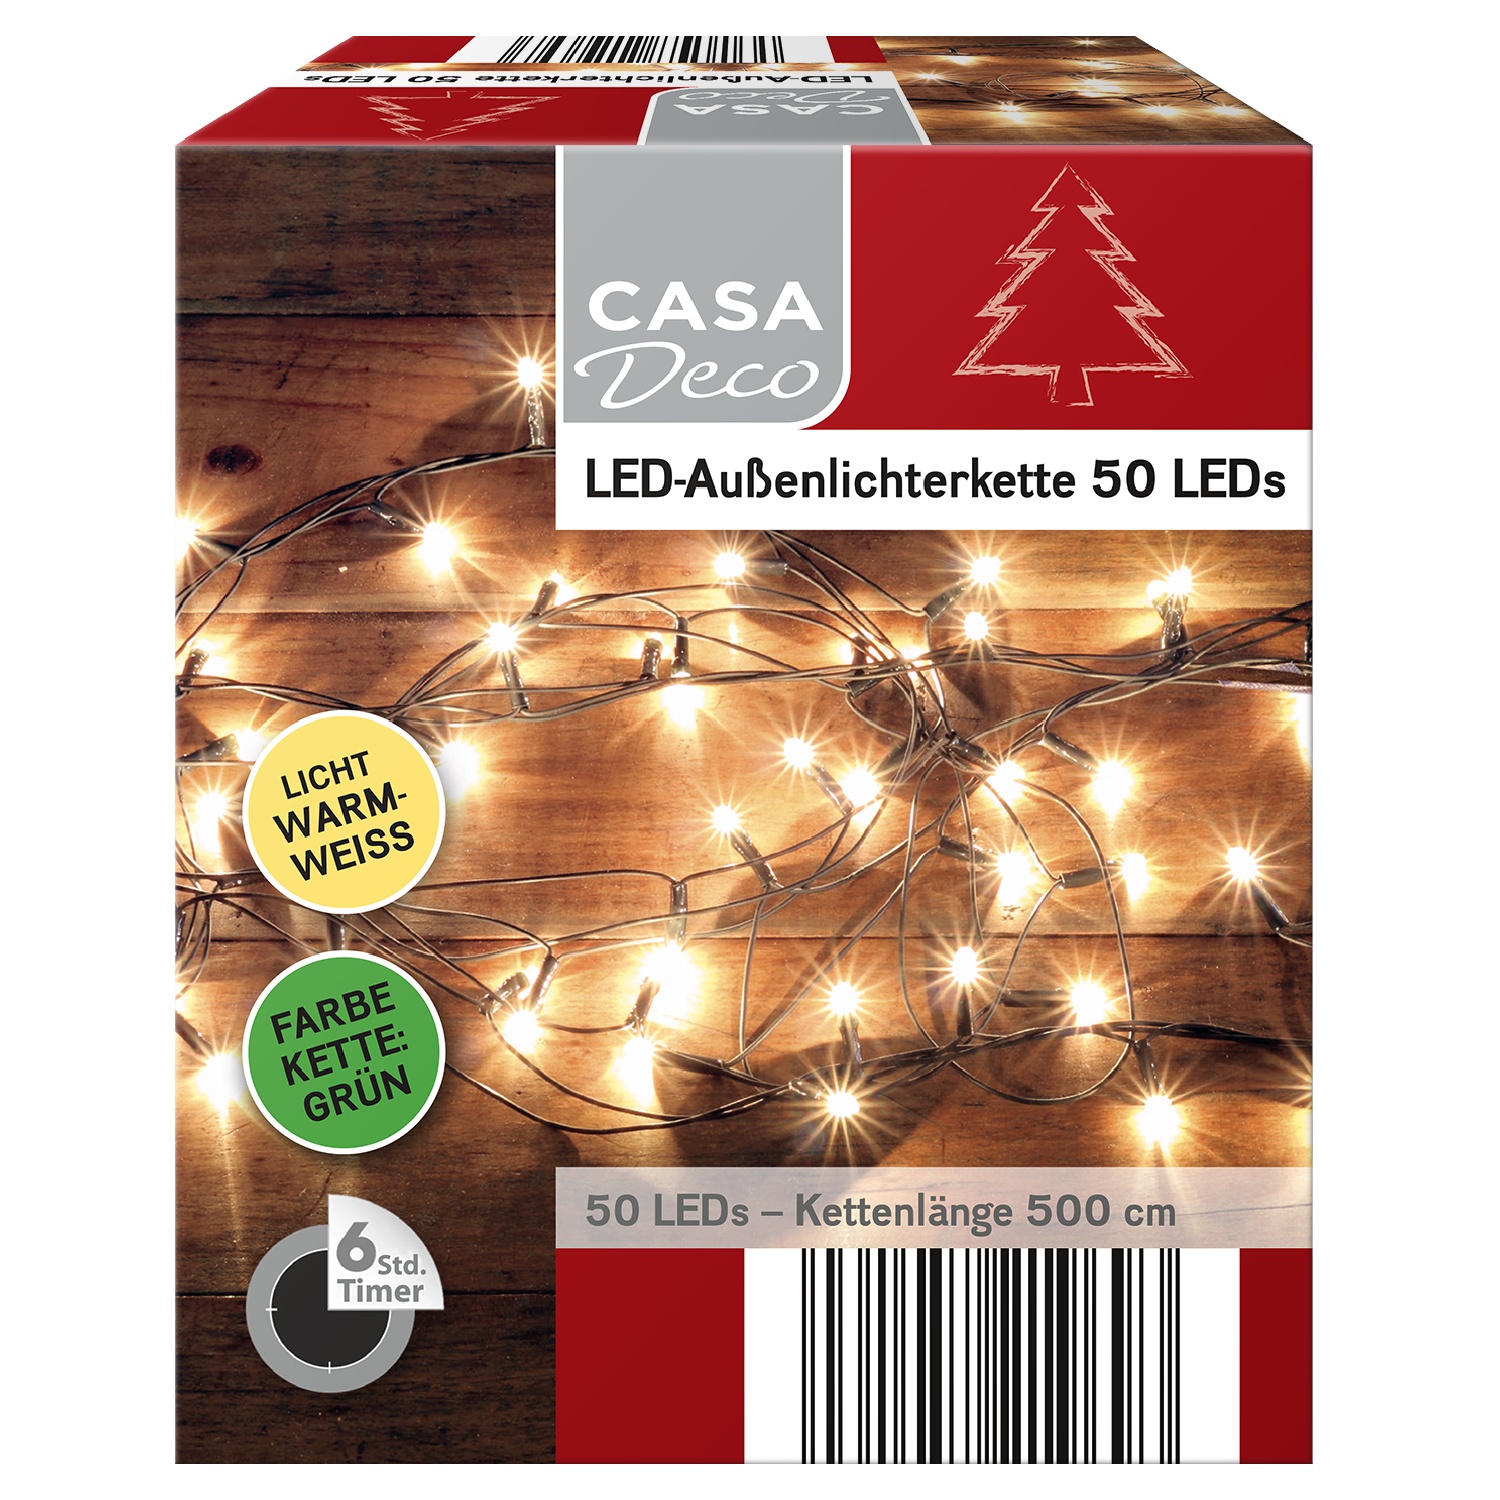 CASA Deco LED-Außenlichterkette